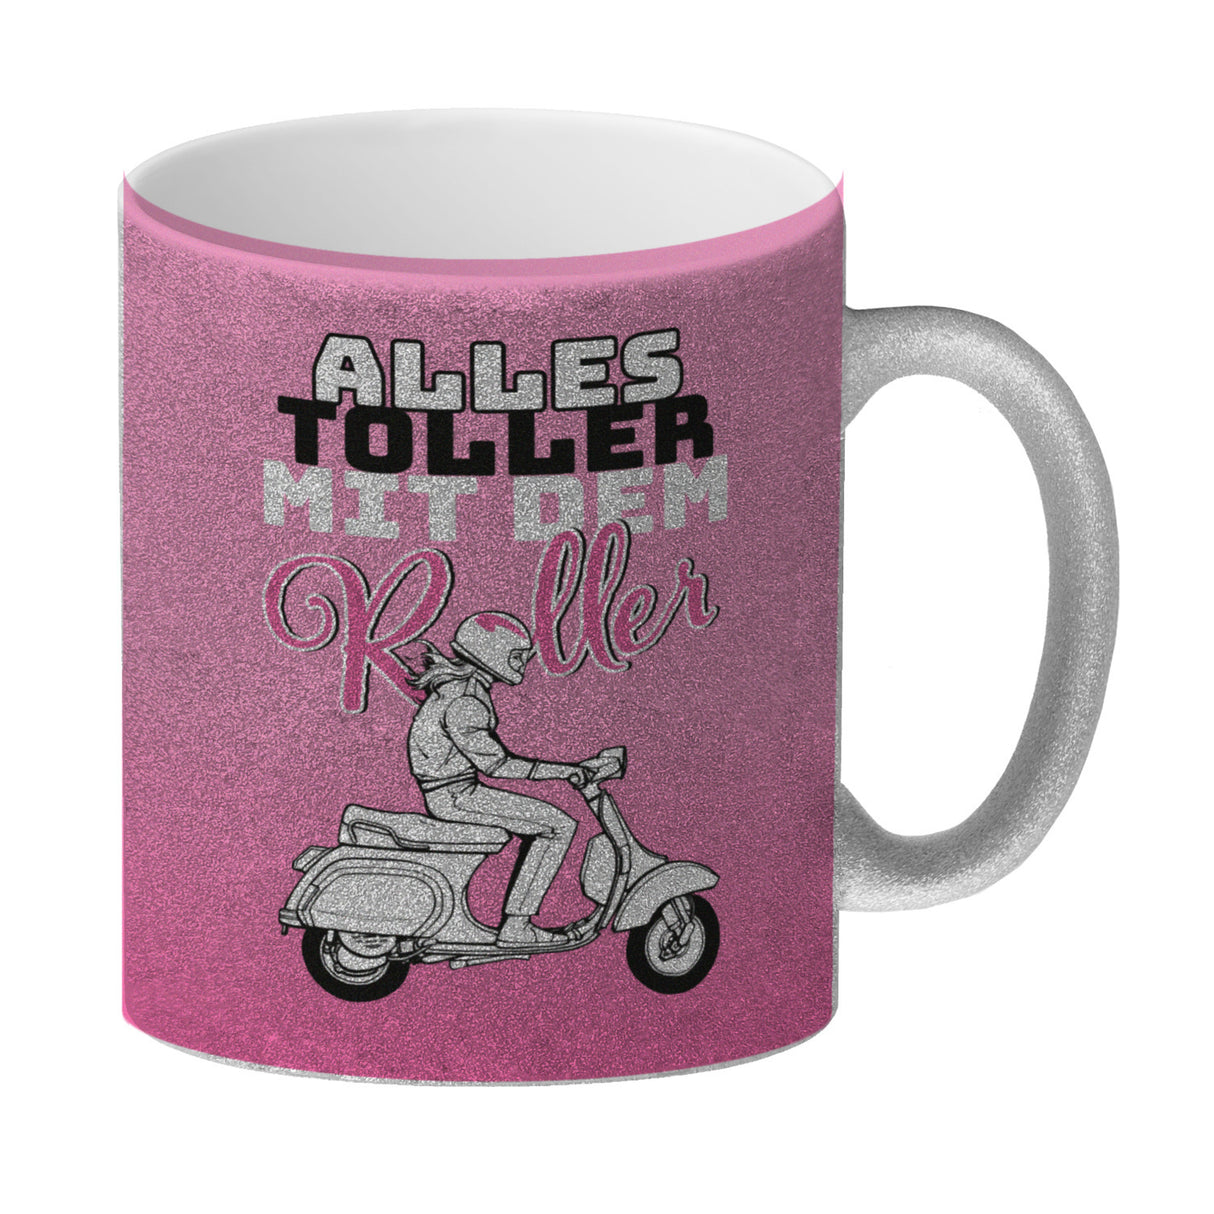 Alles toller mit dem Roller Kaffeebecher in {rosa} mit Rollerfahrerin